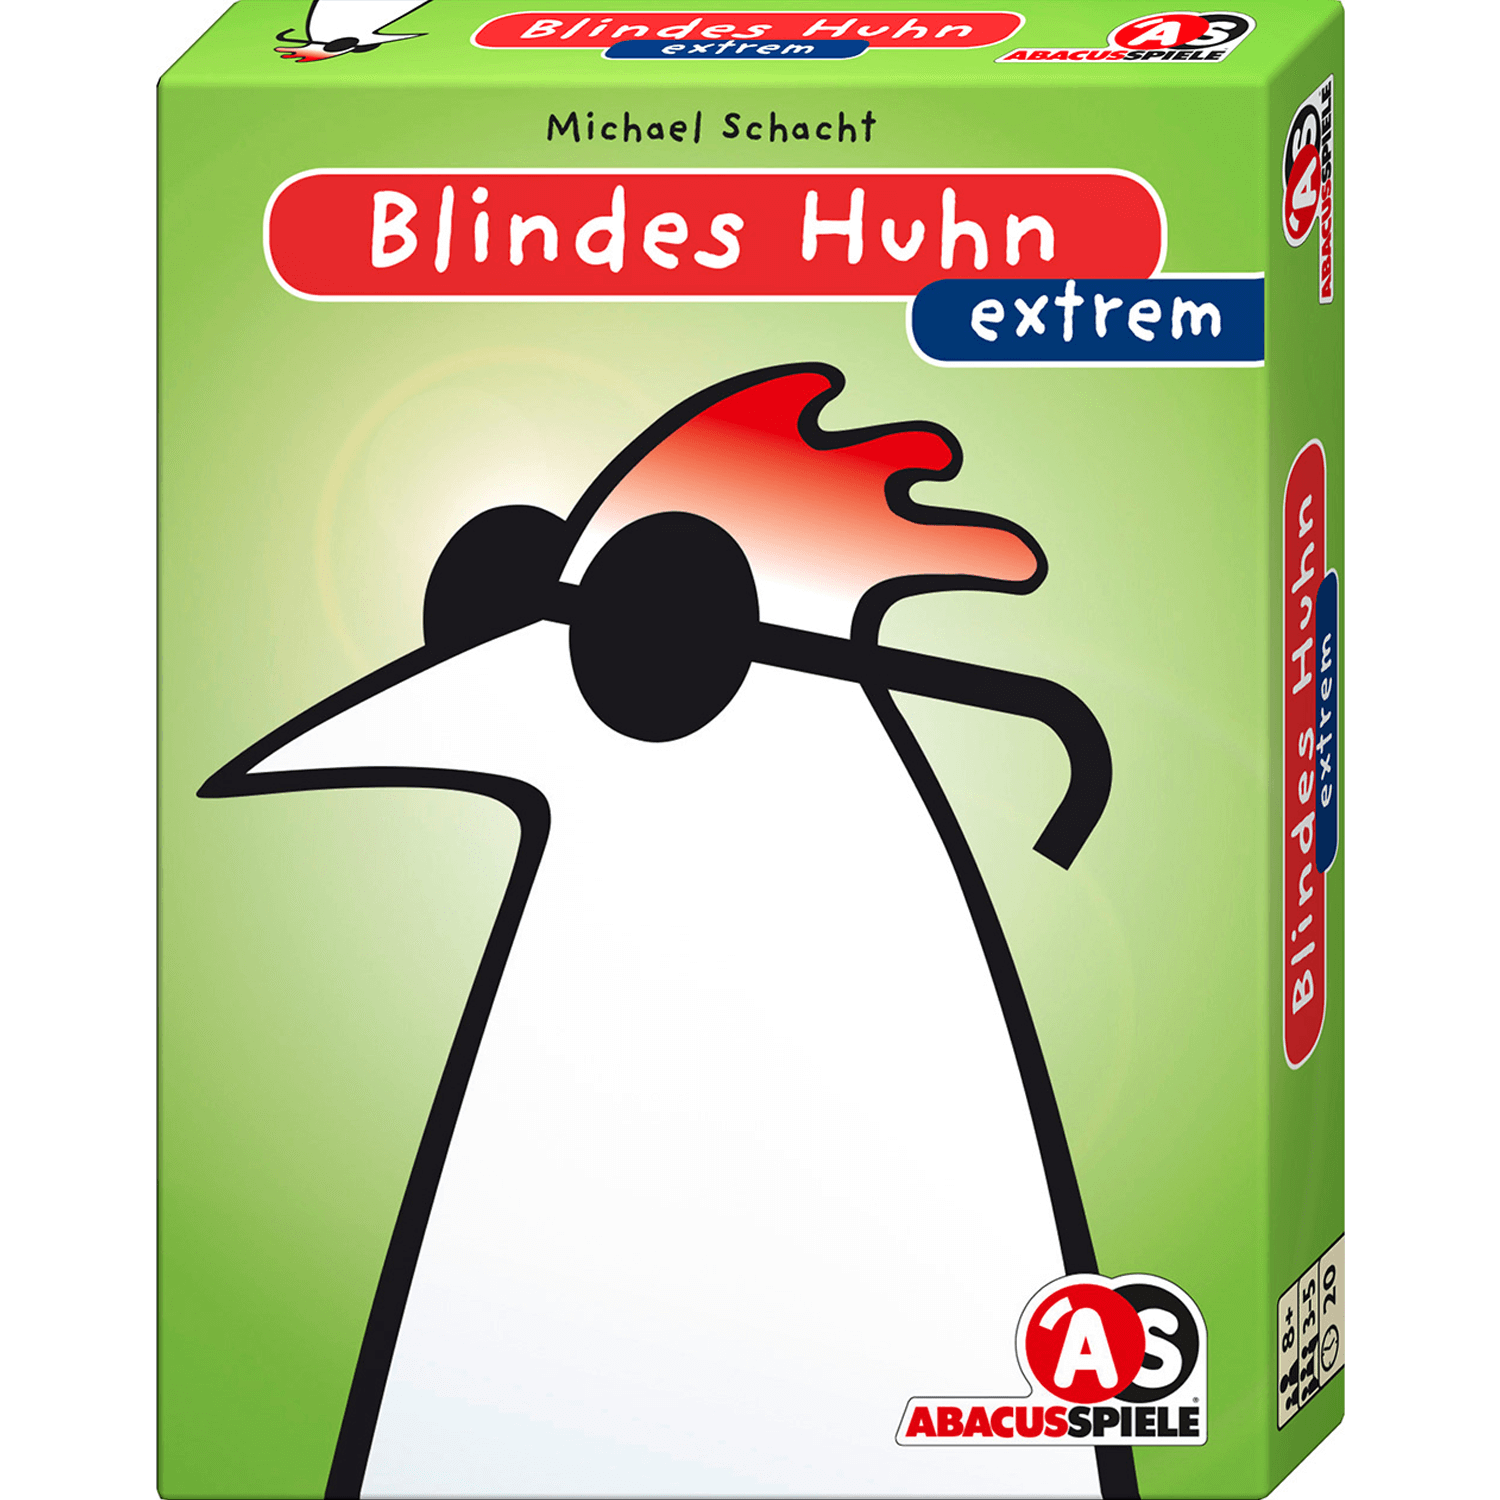 Blindes Huhn Extrem ist bei Abacus Spiele erschienen